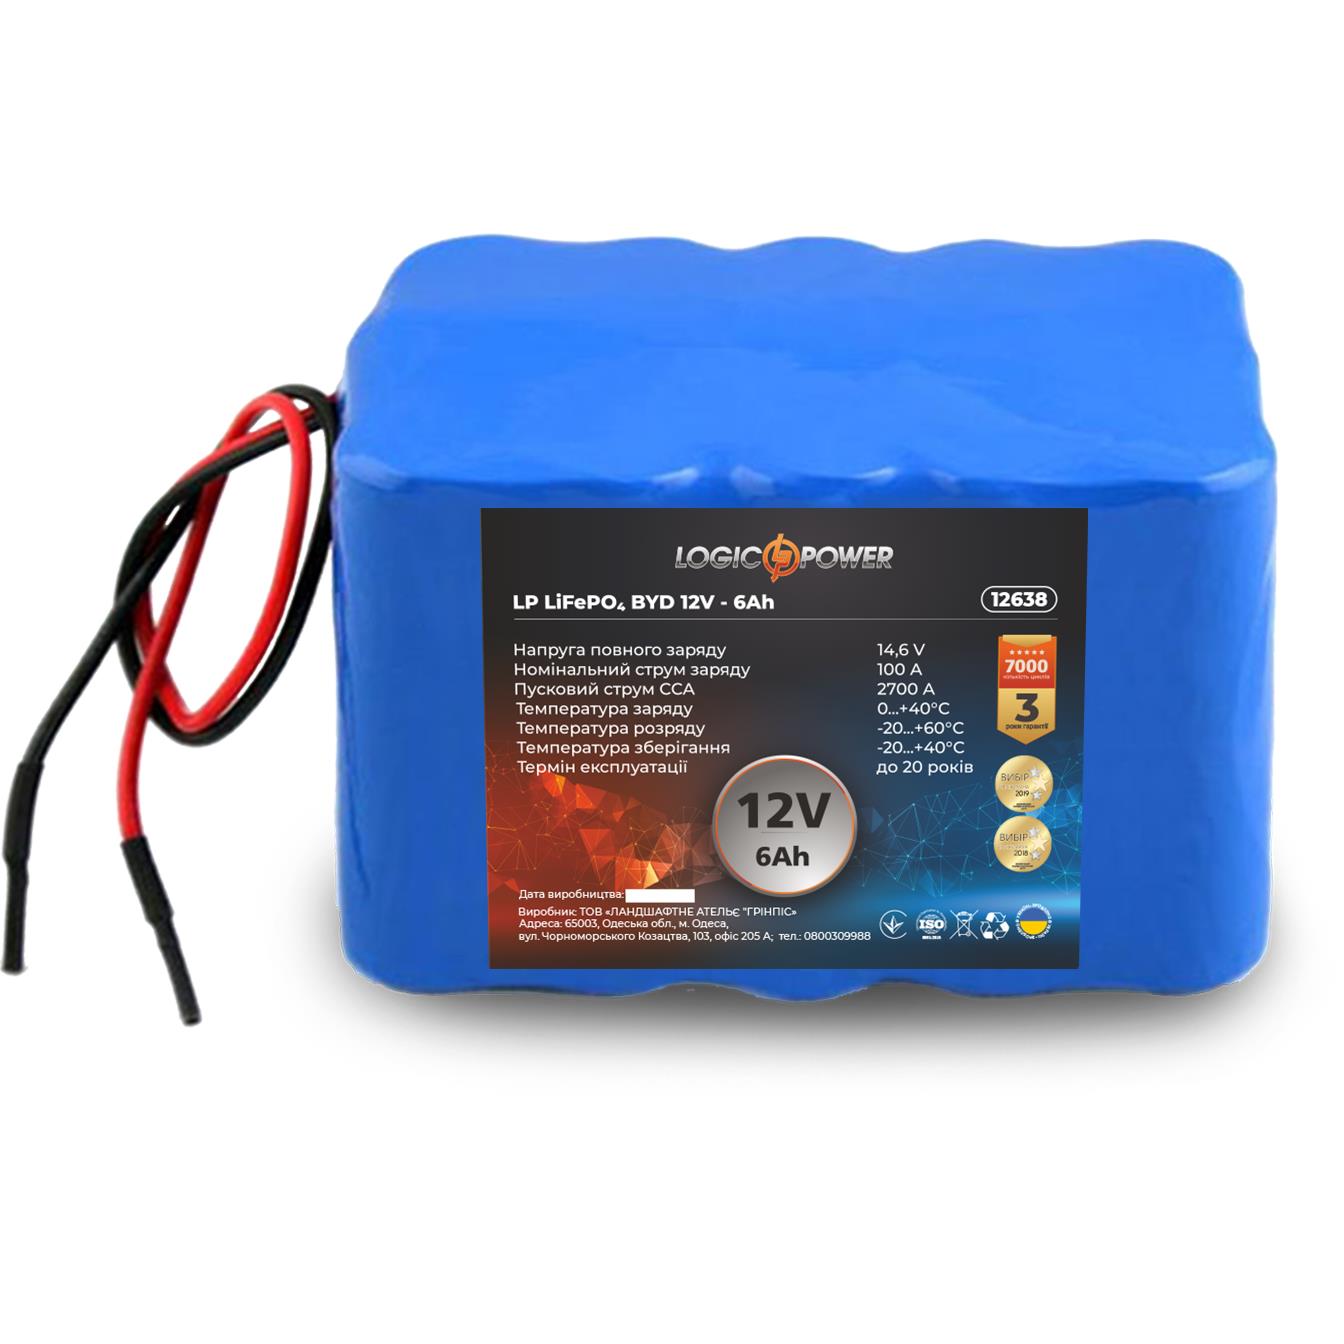 Аккумулятор литий-железо-фосфатный LogicPower LP LiFePO4 12V - 6 Ah для мопеда (12638)